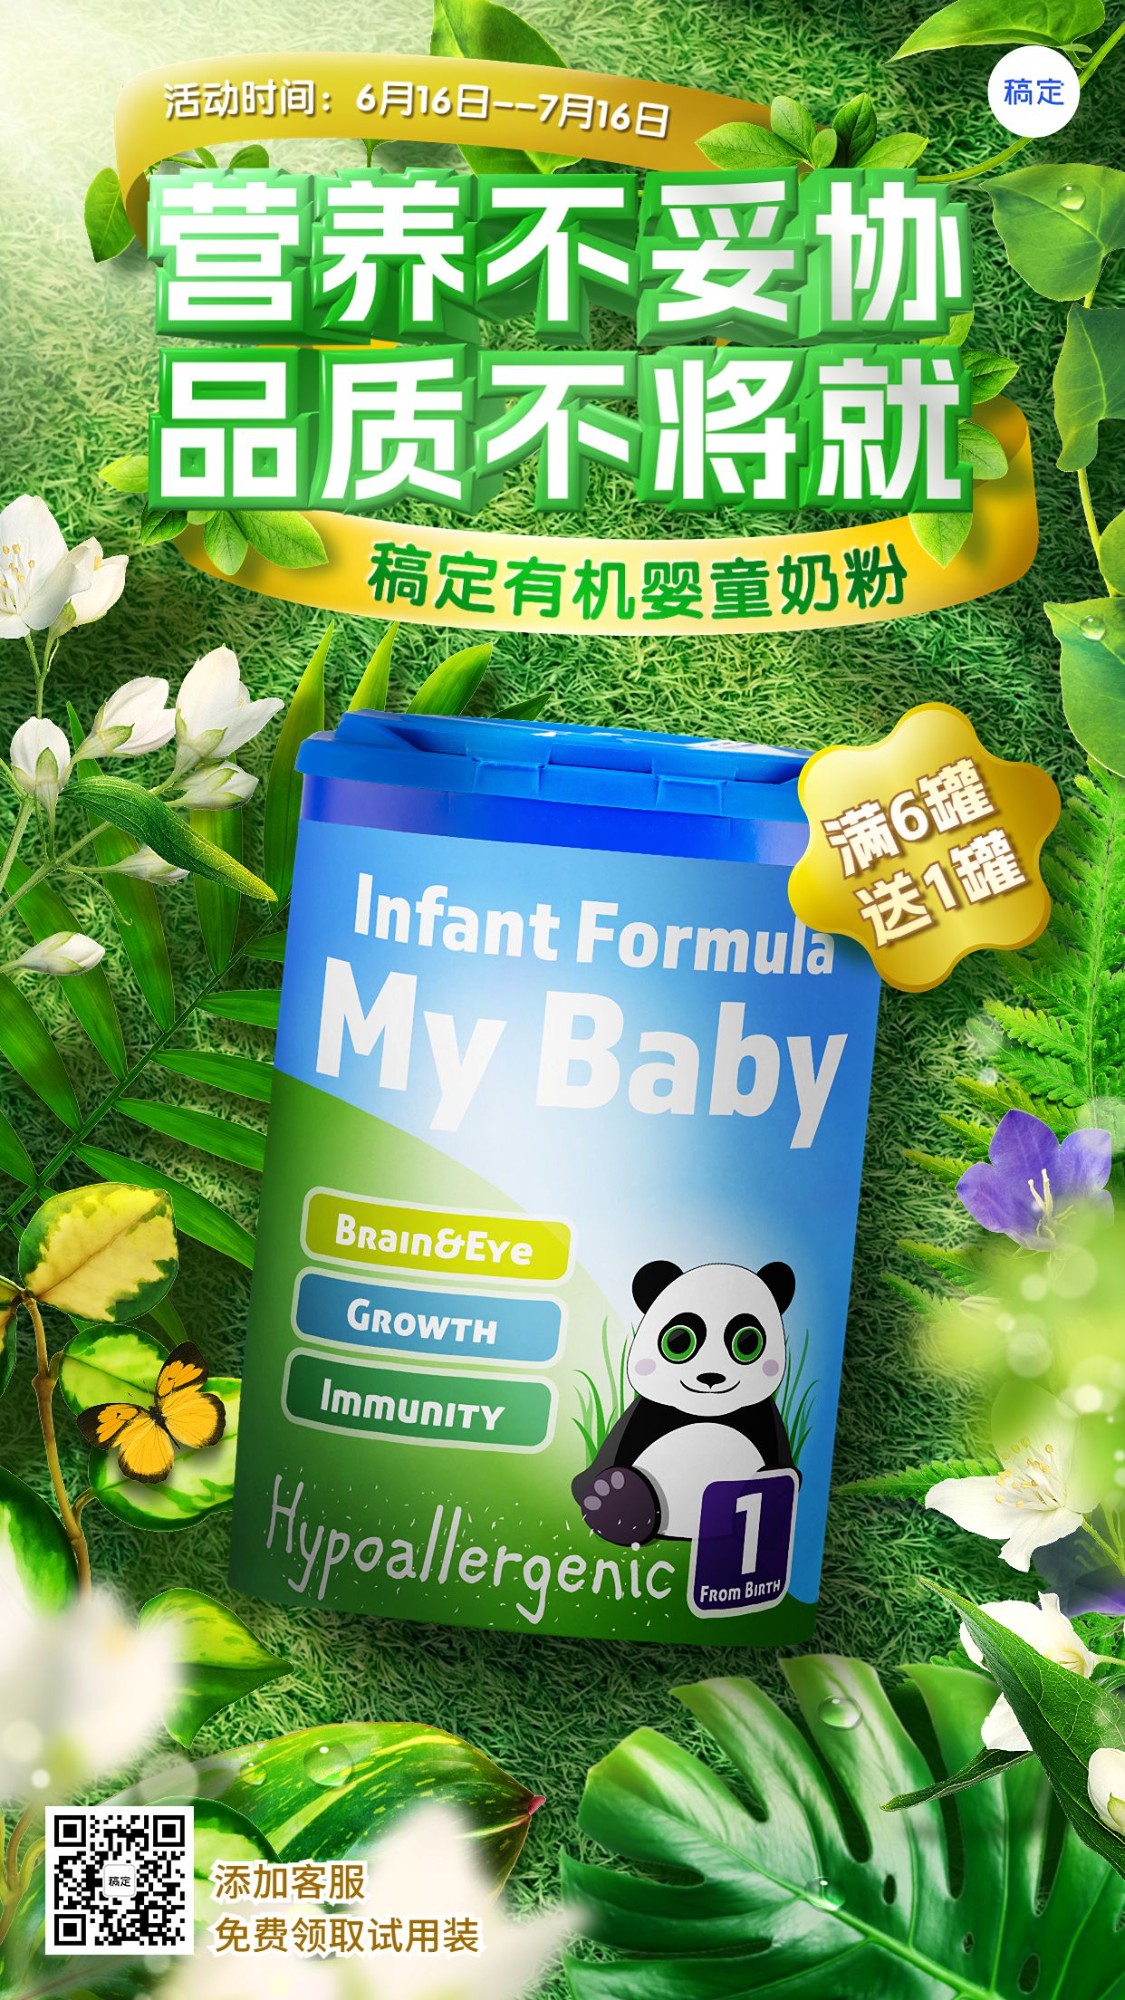 母婴亲子奶粉产品展示营销手机海报